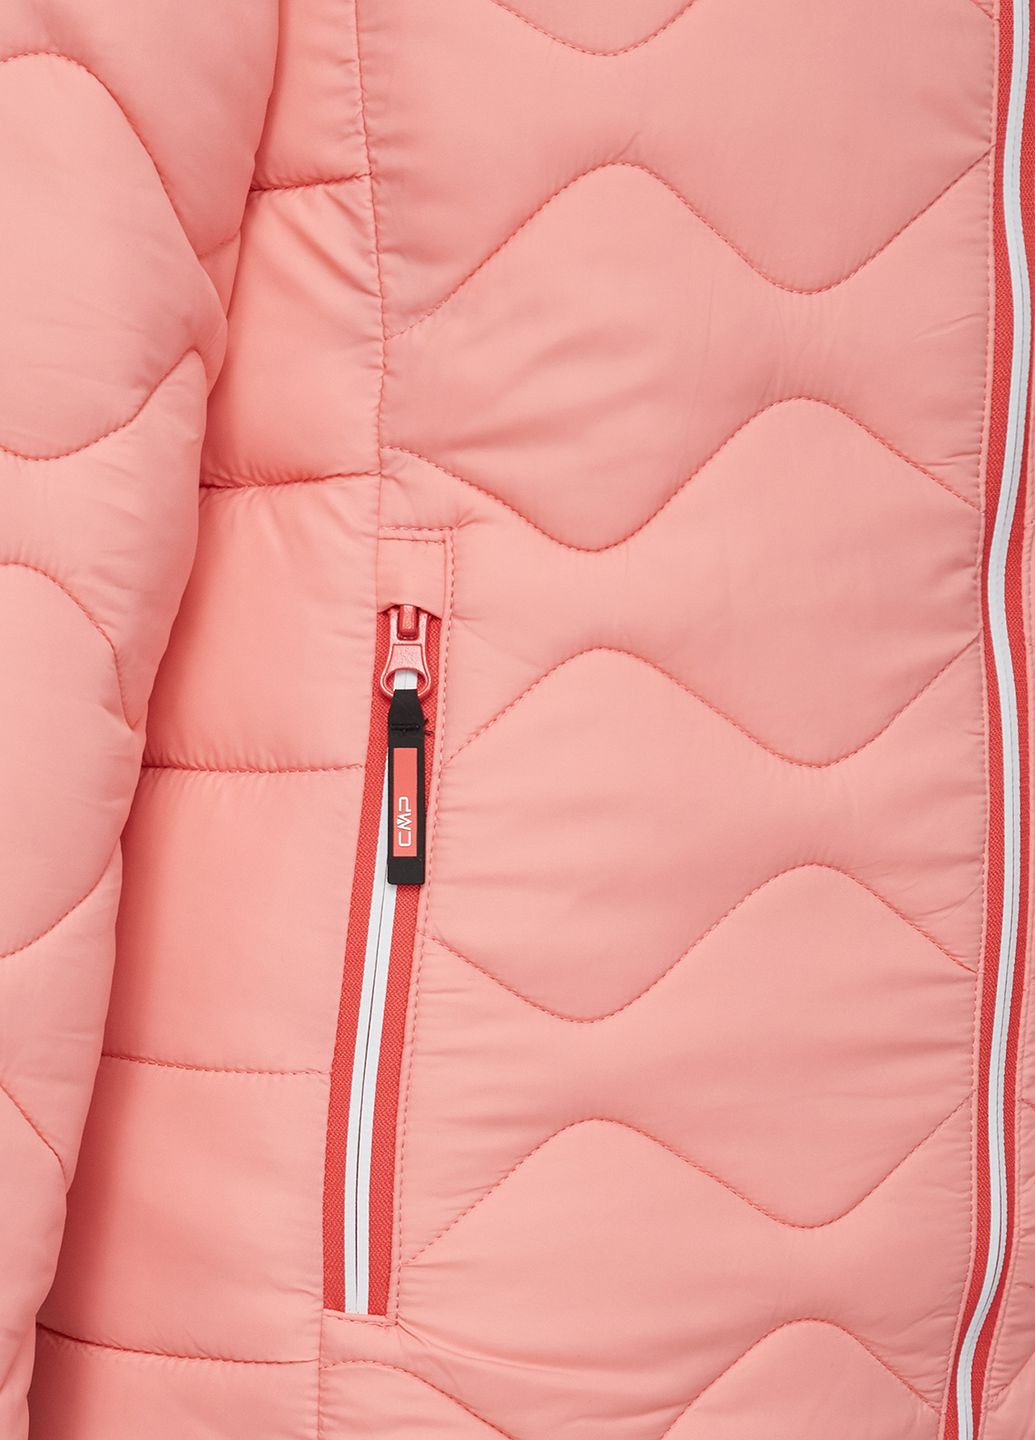 Розовая демисезонная розовая куртка на синтепоне kid g jacket fix hood CMP